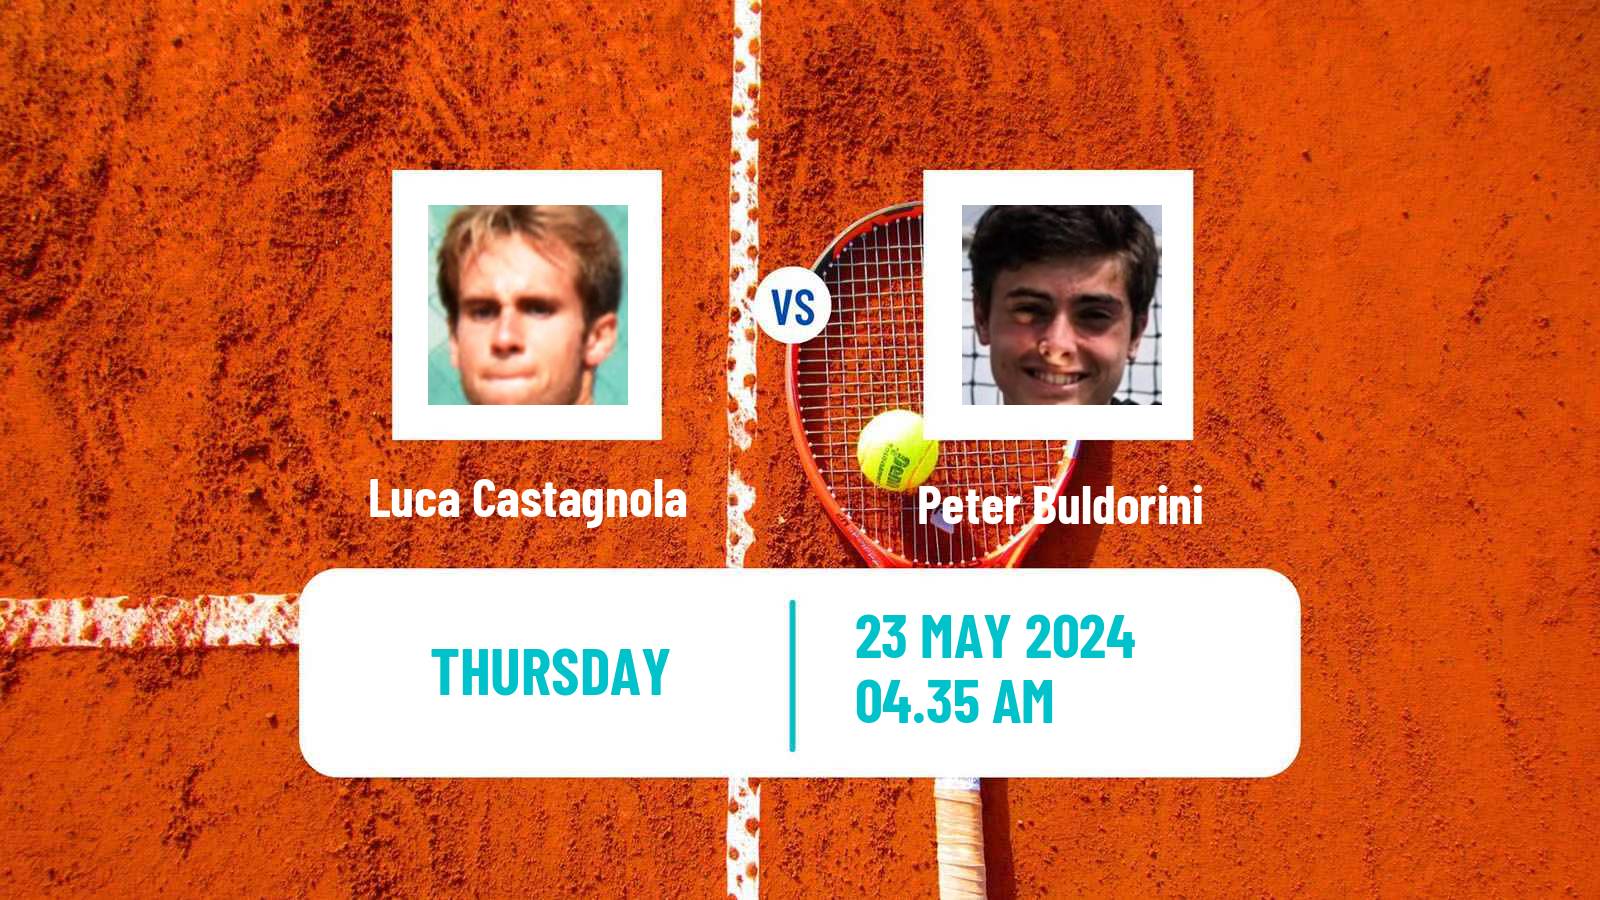 Tennis ITF M15 Cervia Men Luca Castagnola - Peter Buldorini